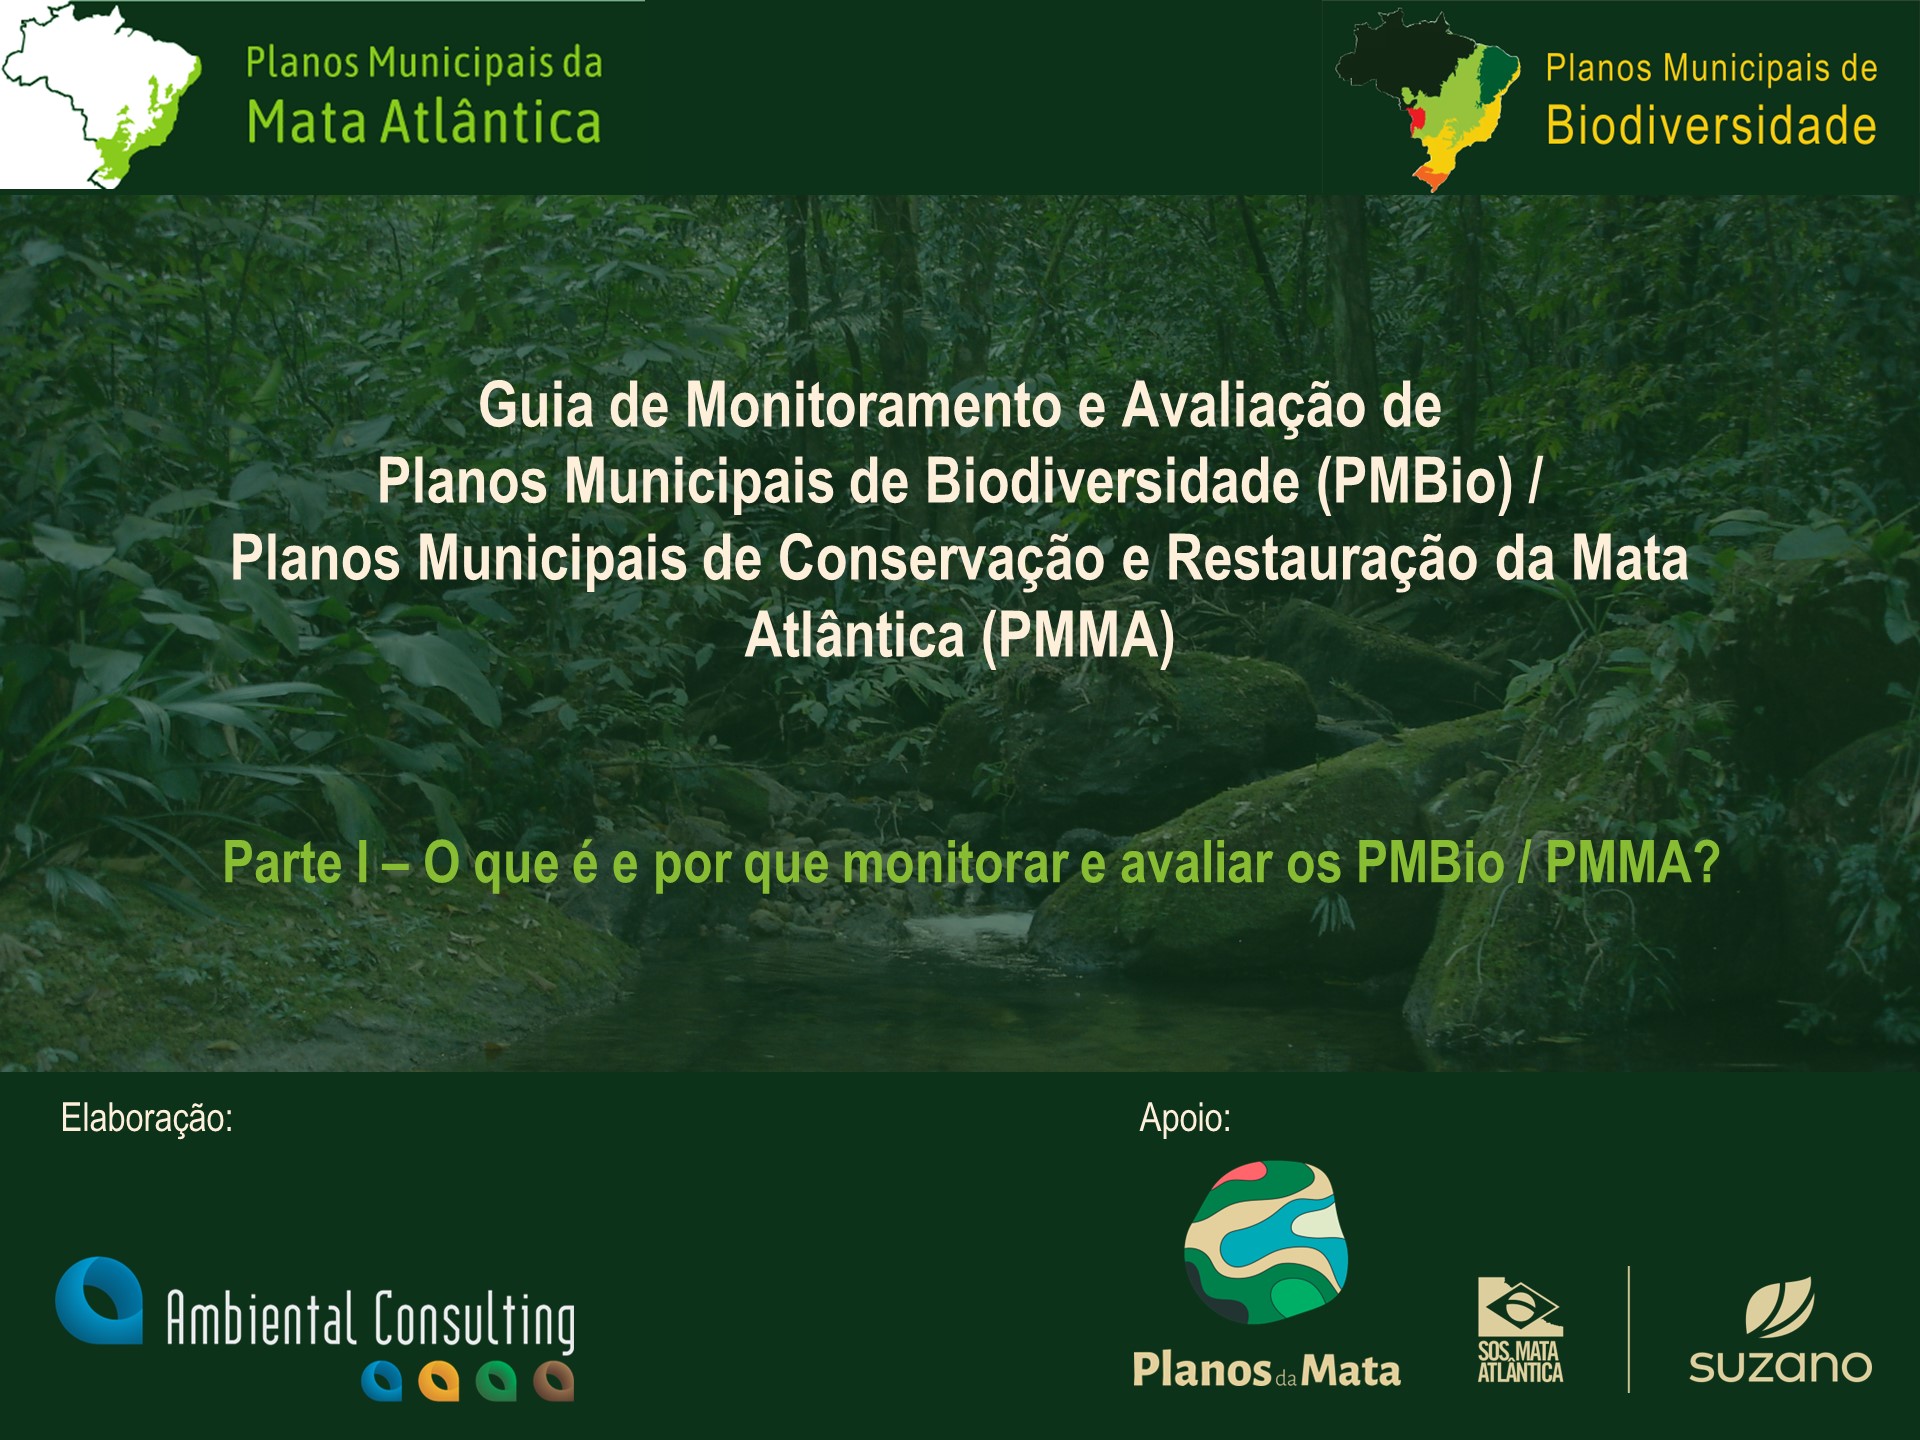 Guia de Monitoramento e Avaliação dos Planos Municipais de Biodiversidade-PMBio/PMMA